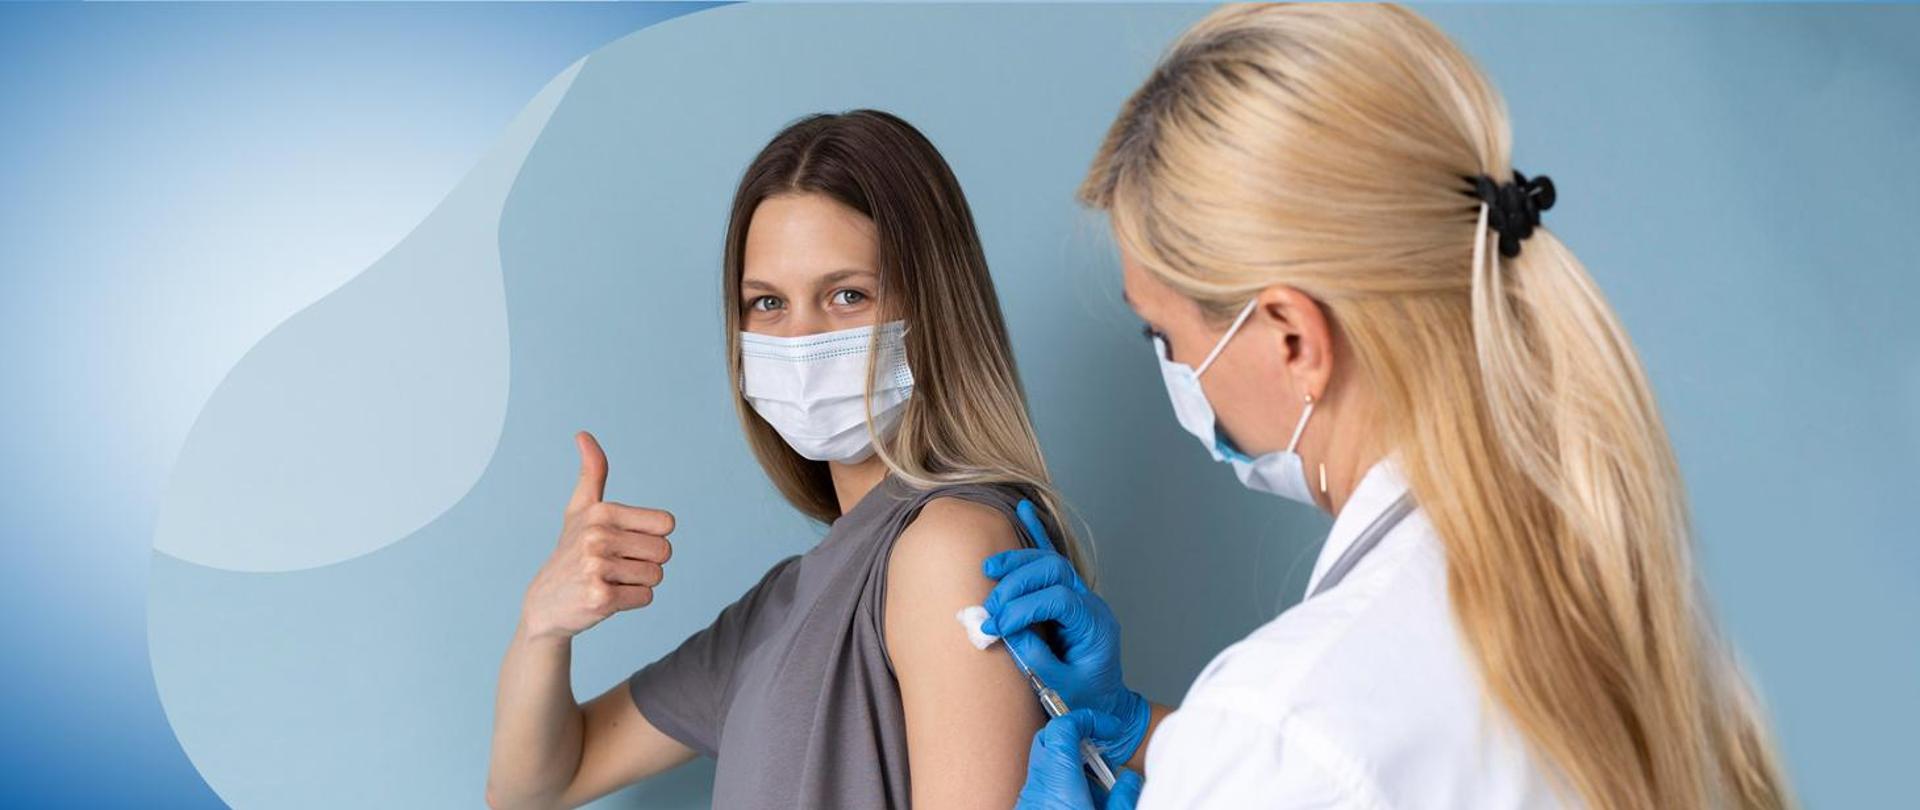 Młoda kobieta w maseczce na twarzy przyjmuje w ramię szczepionkę, którą podaje kobieta w białym fartuchu i w maseczce